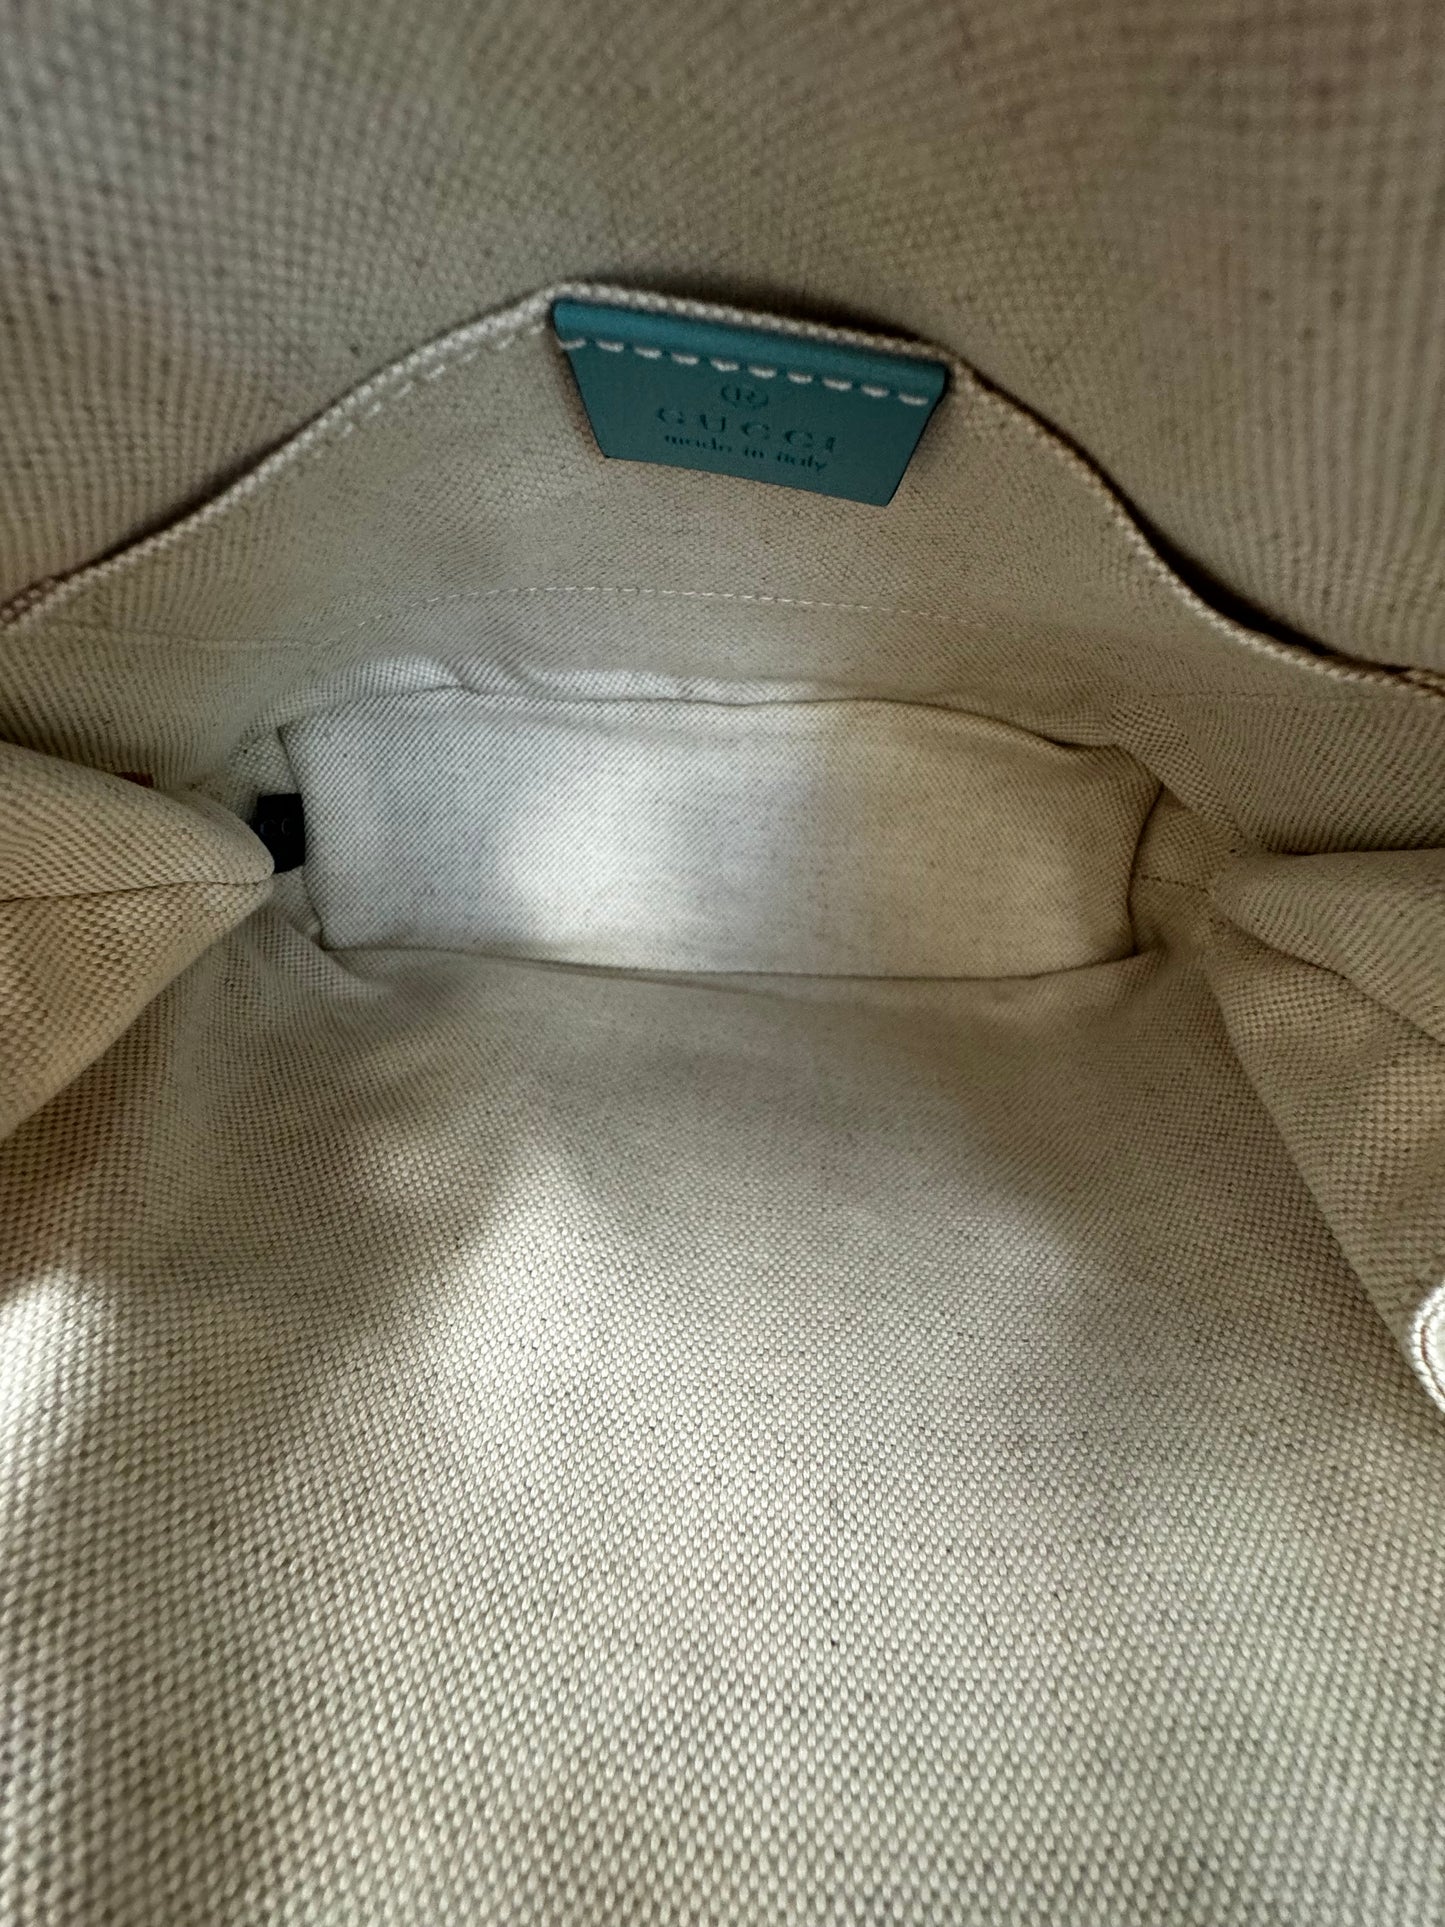 Gucci Horsebit 1955 Mini Top Handle Bag